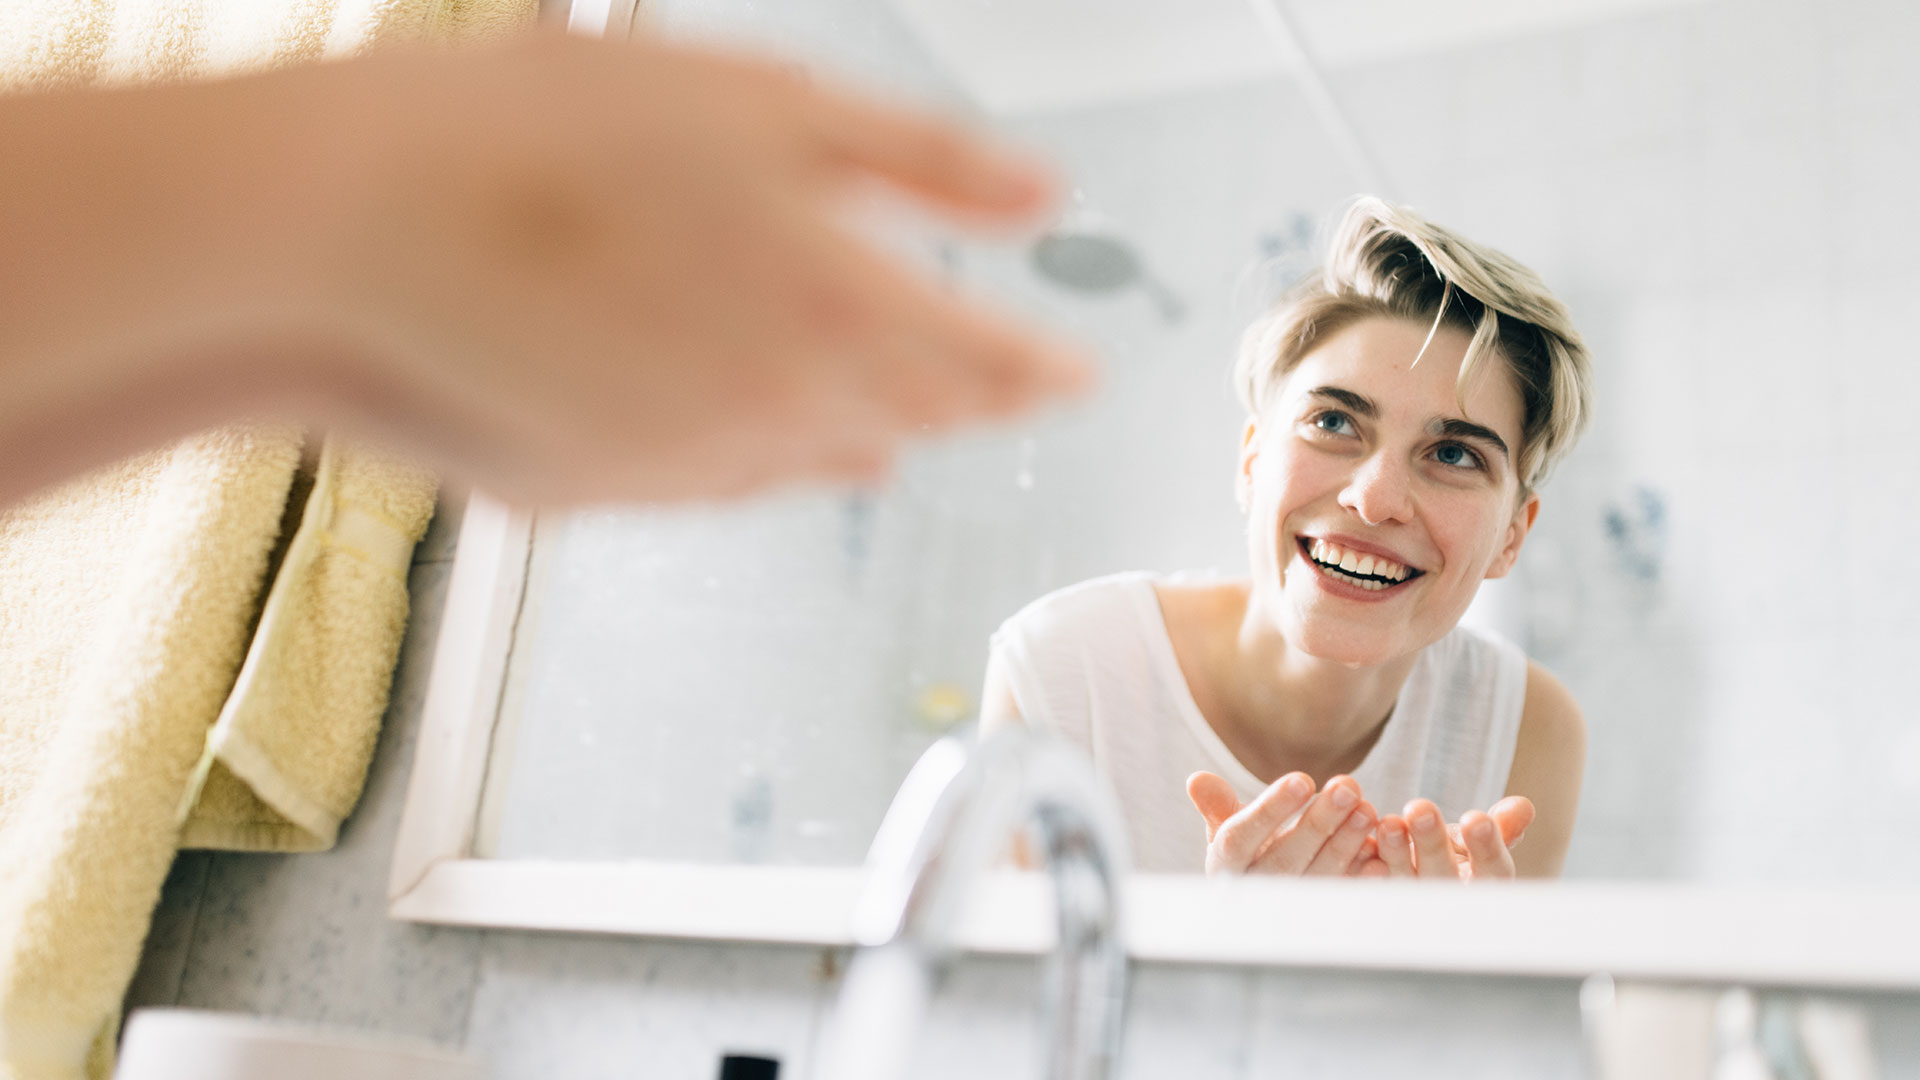 “Lavarse la cara ayuda a eliminar la suciedad, el maquillaje y la contaminación y repone la humedad de la piel” (Getty Images)